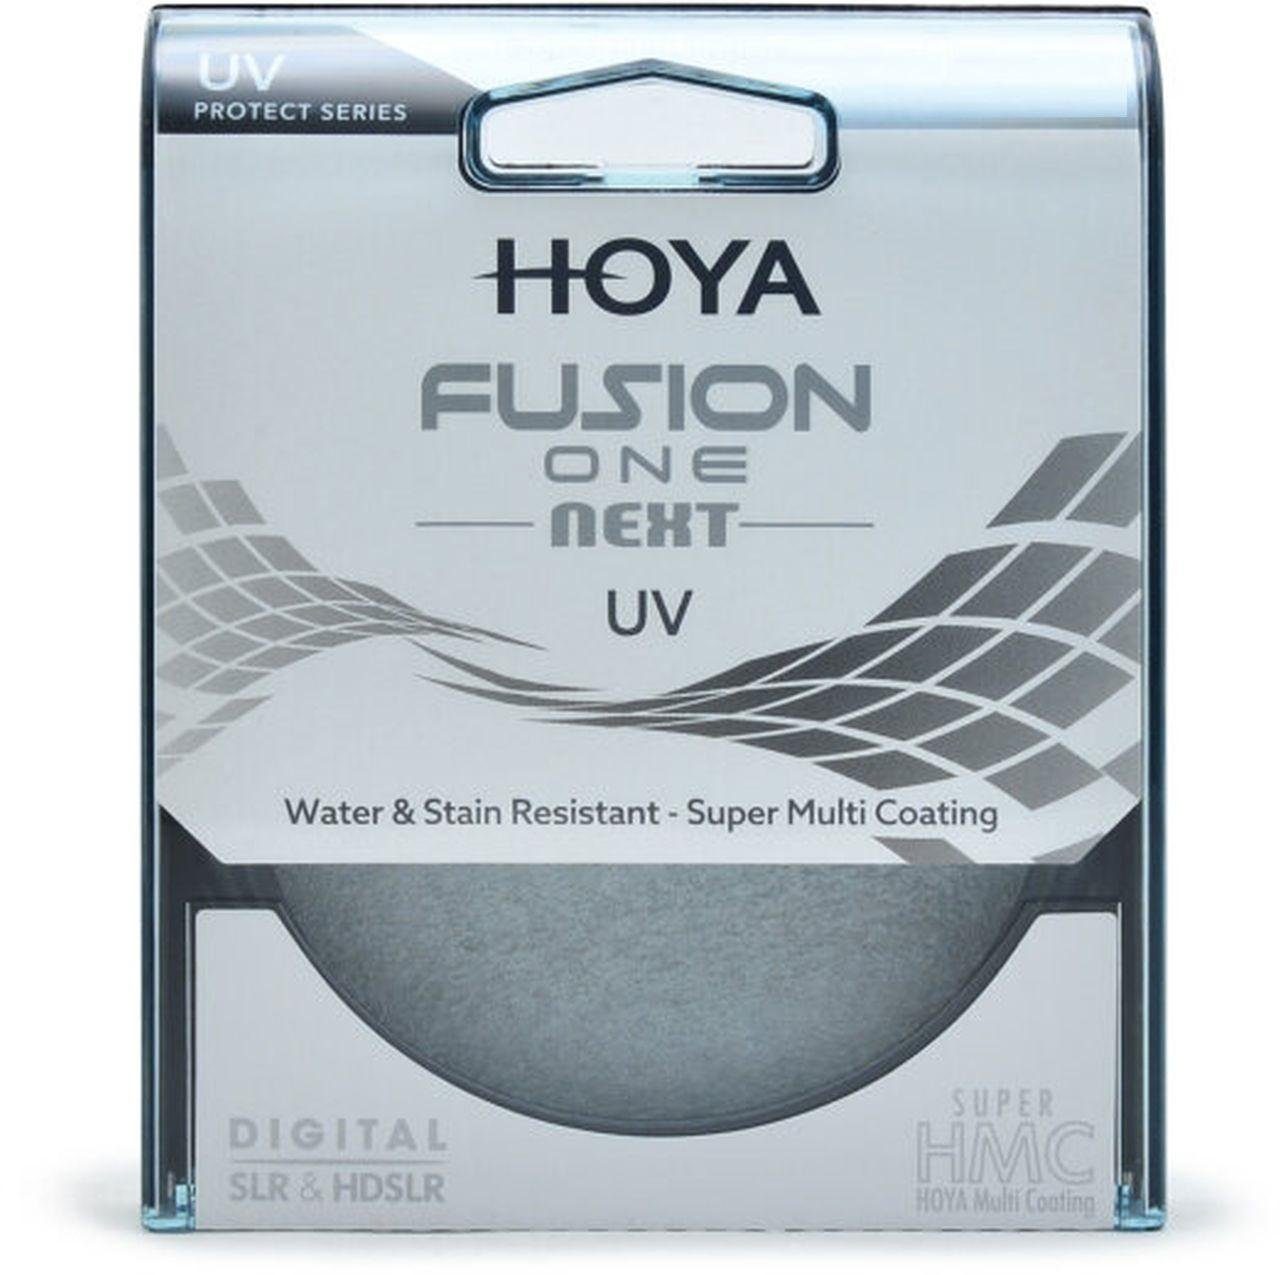 Hoya Fusion UV-Filter Objektivzubehör ONE Next 55mm